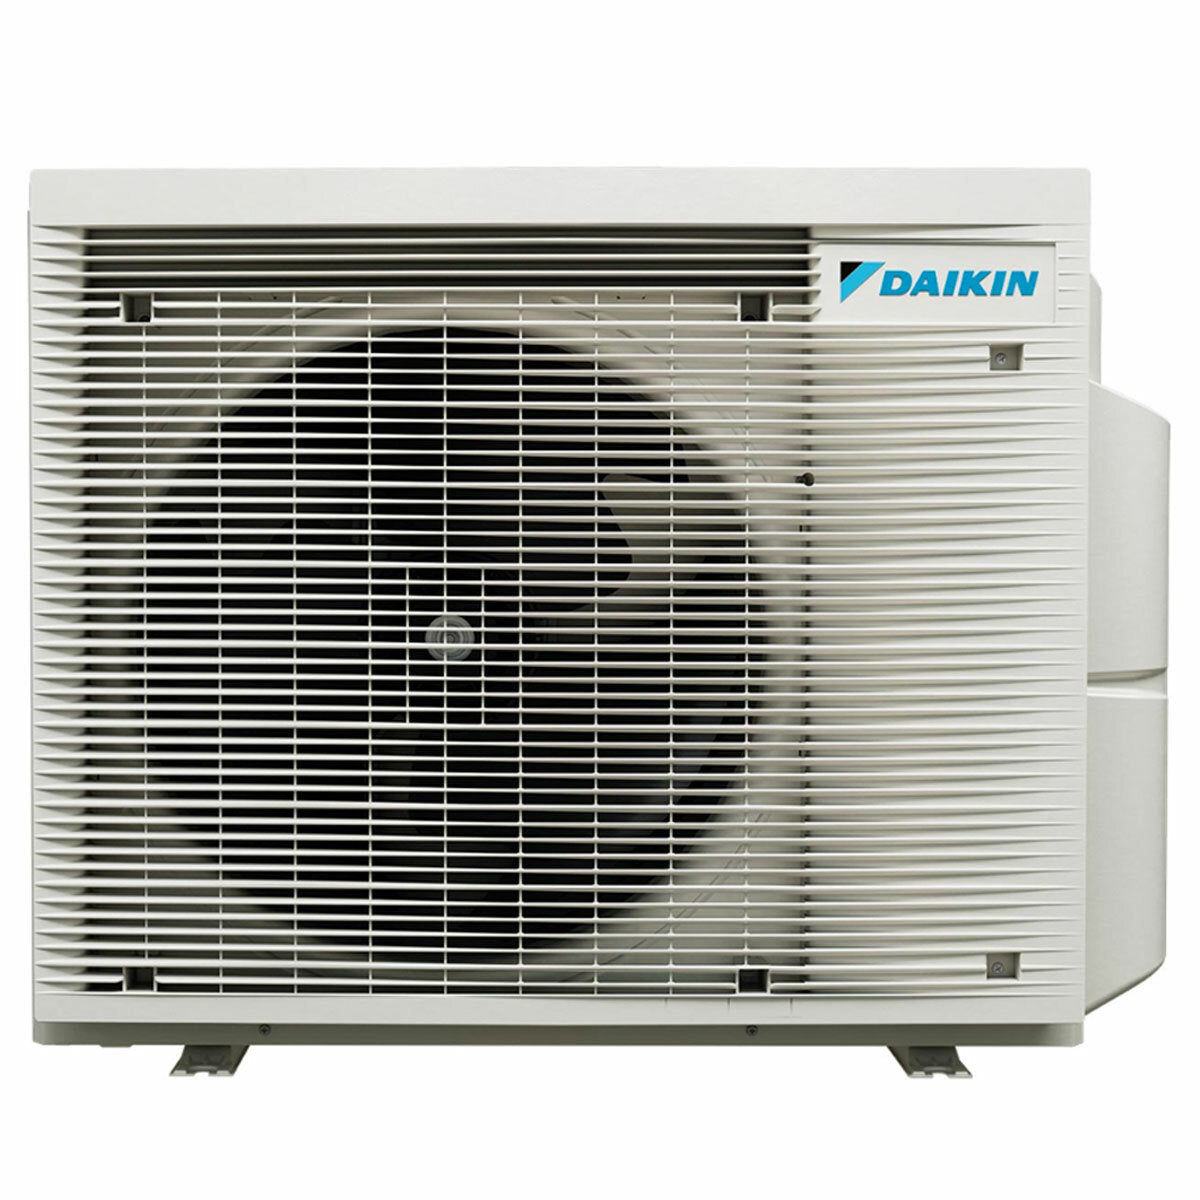 Daikin Emura 3 trial split air conditioner 9000+9000+12000 BTU inverter A+ wifi outdoor unit 6.8 kW Black